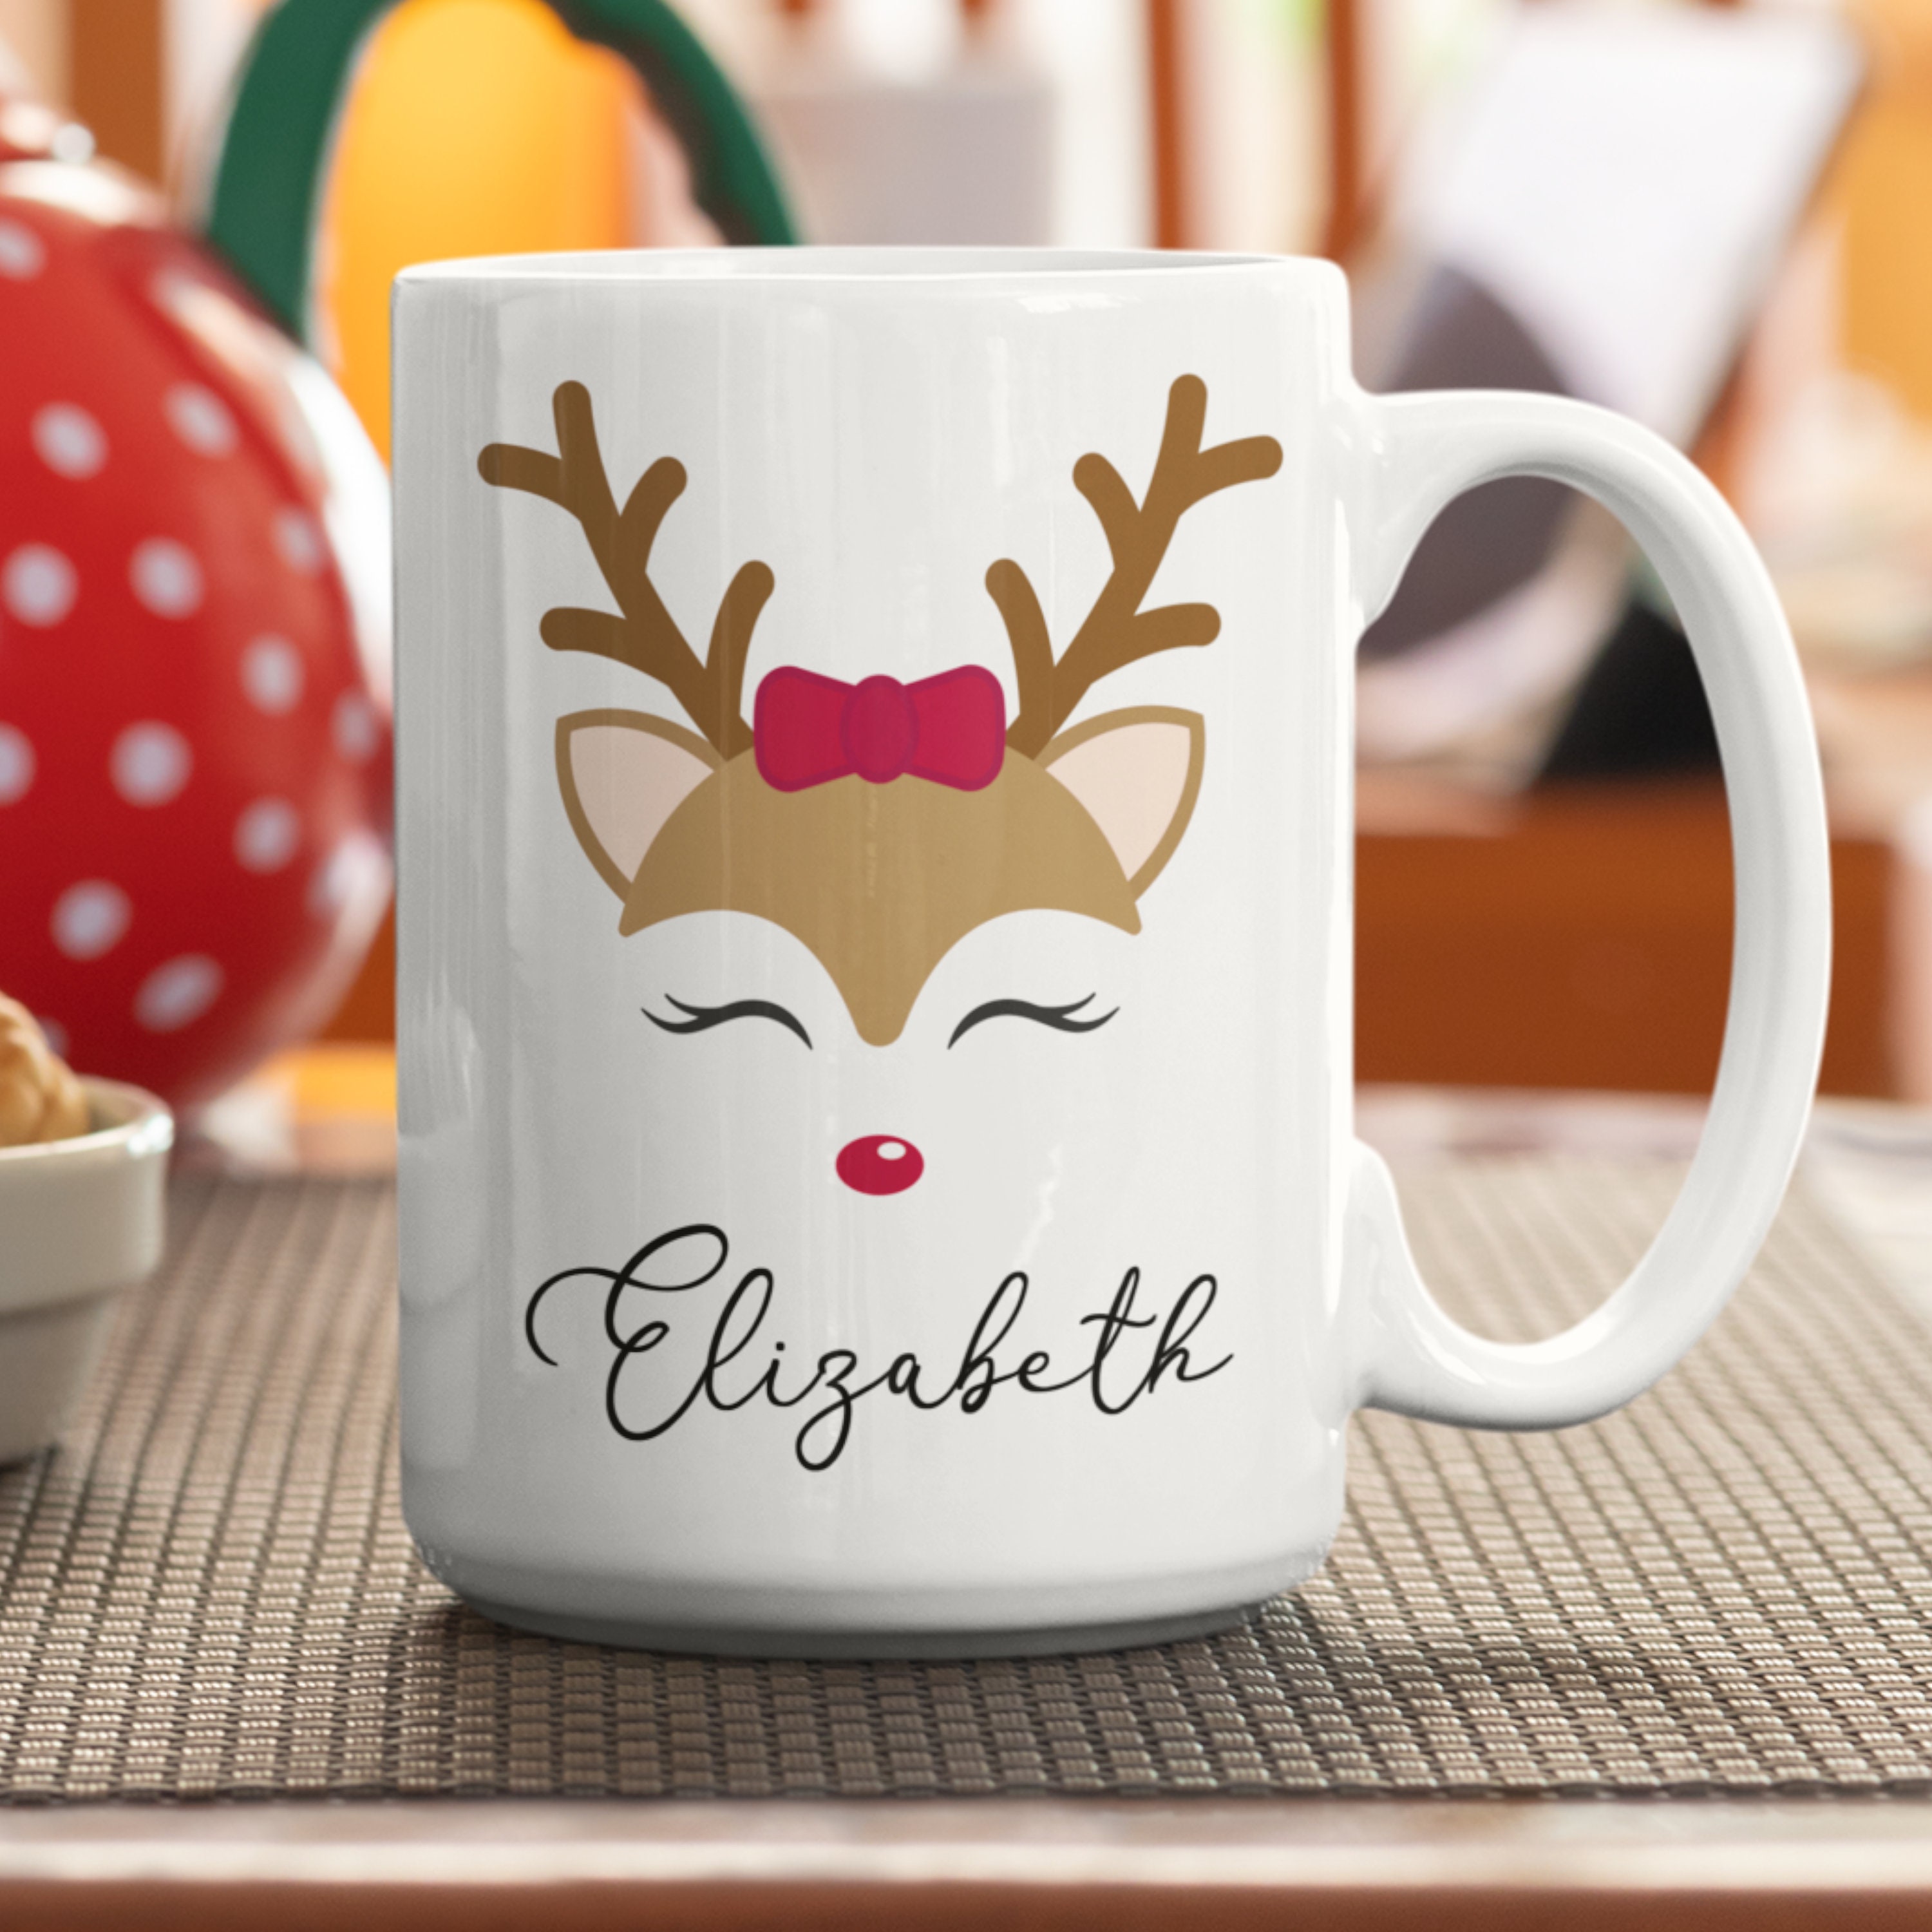 Reindeer Names Paper Coffee Cups 8ct